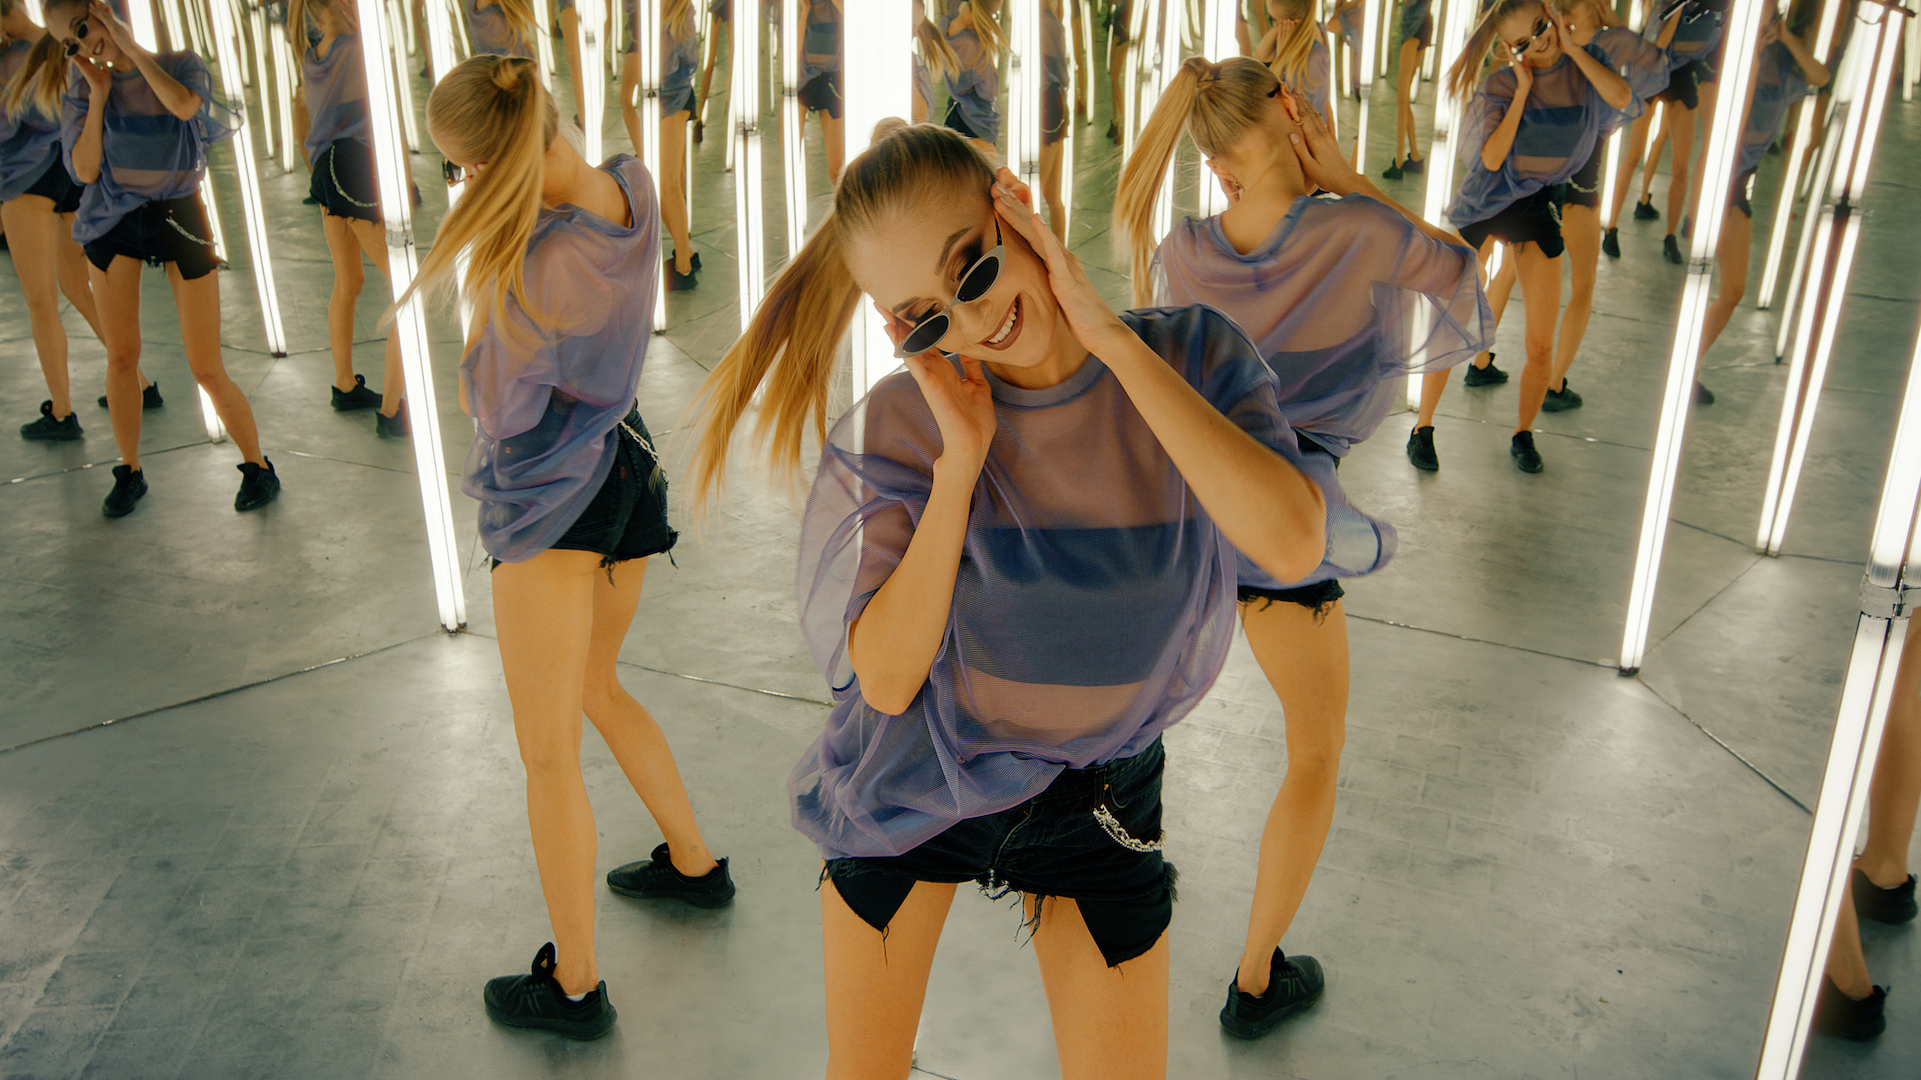 O fotografie a unei femei care dansează într-o sală de oglinzi cu multe reflexii în spate